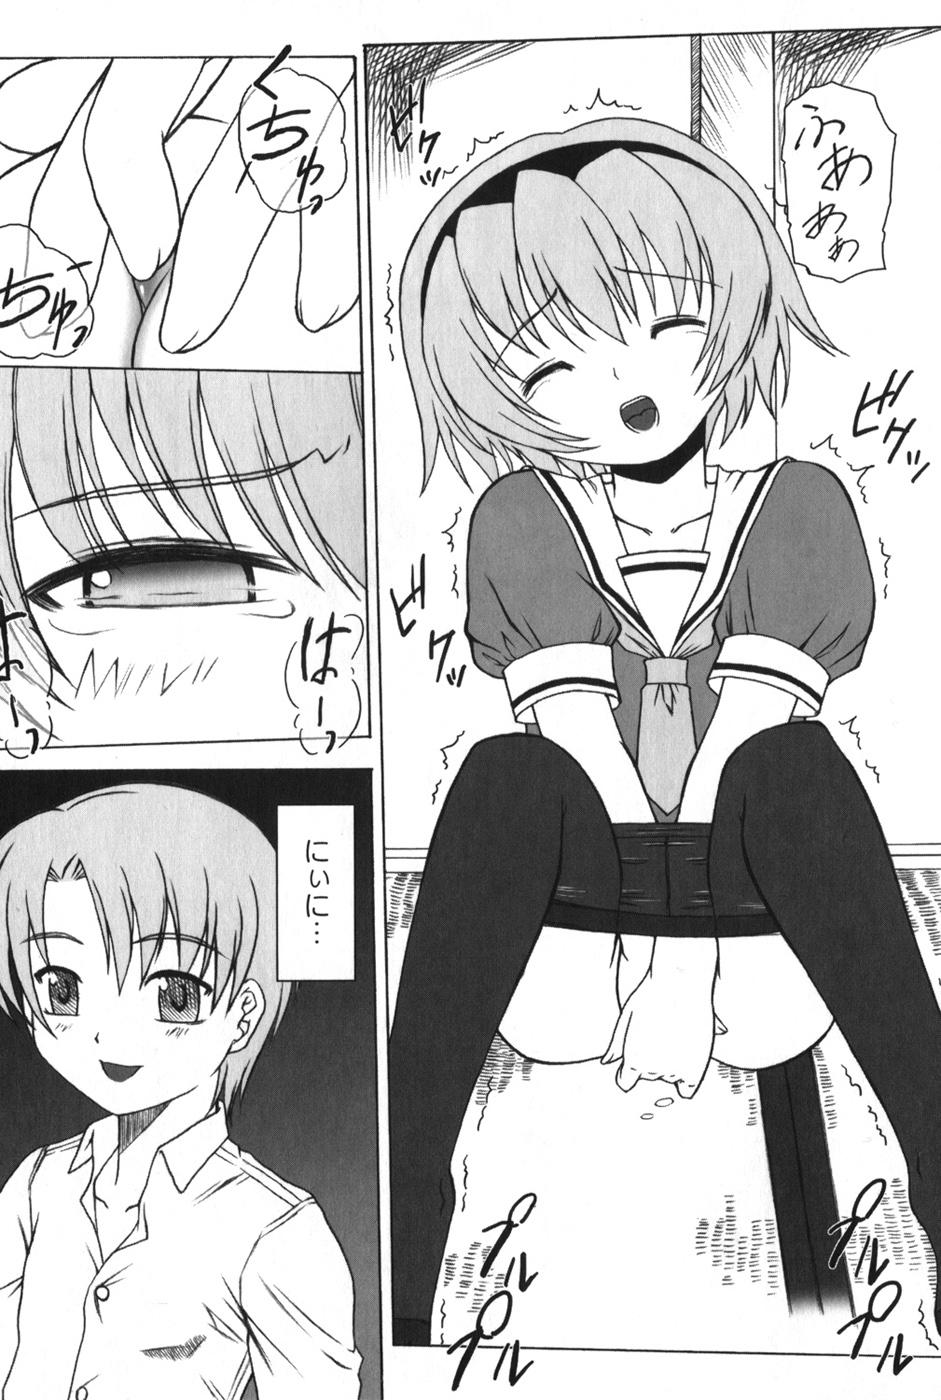 Ball Licking HiguERO no naku koro ni - Higurashi no naku koro ni Arabe - Page 10